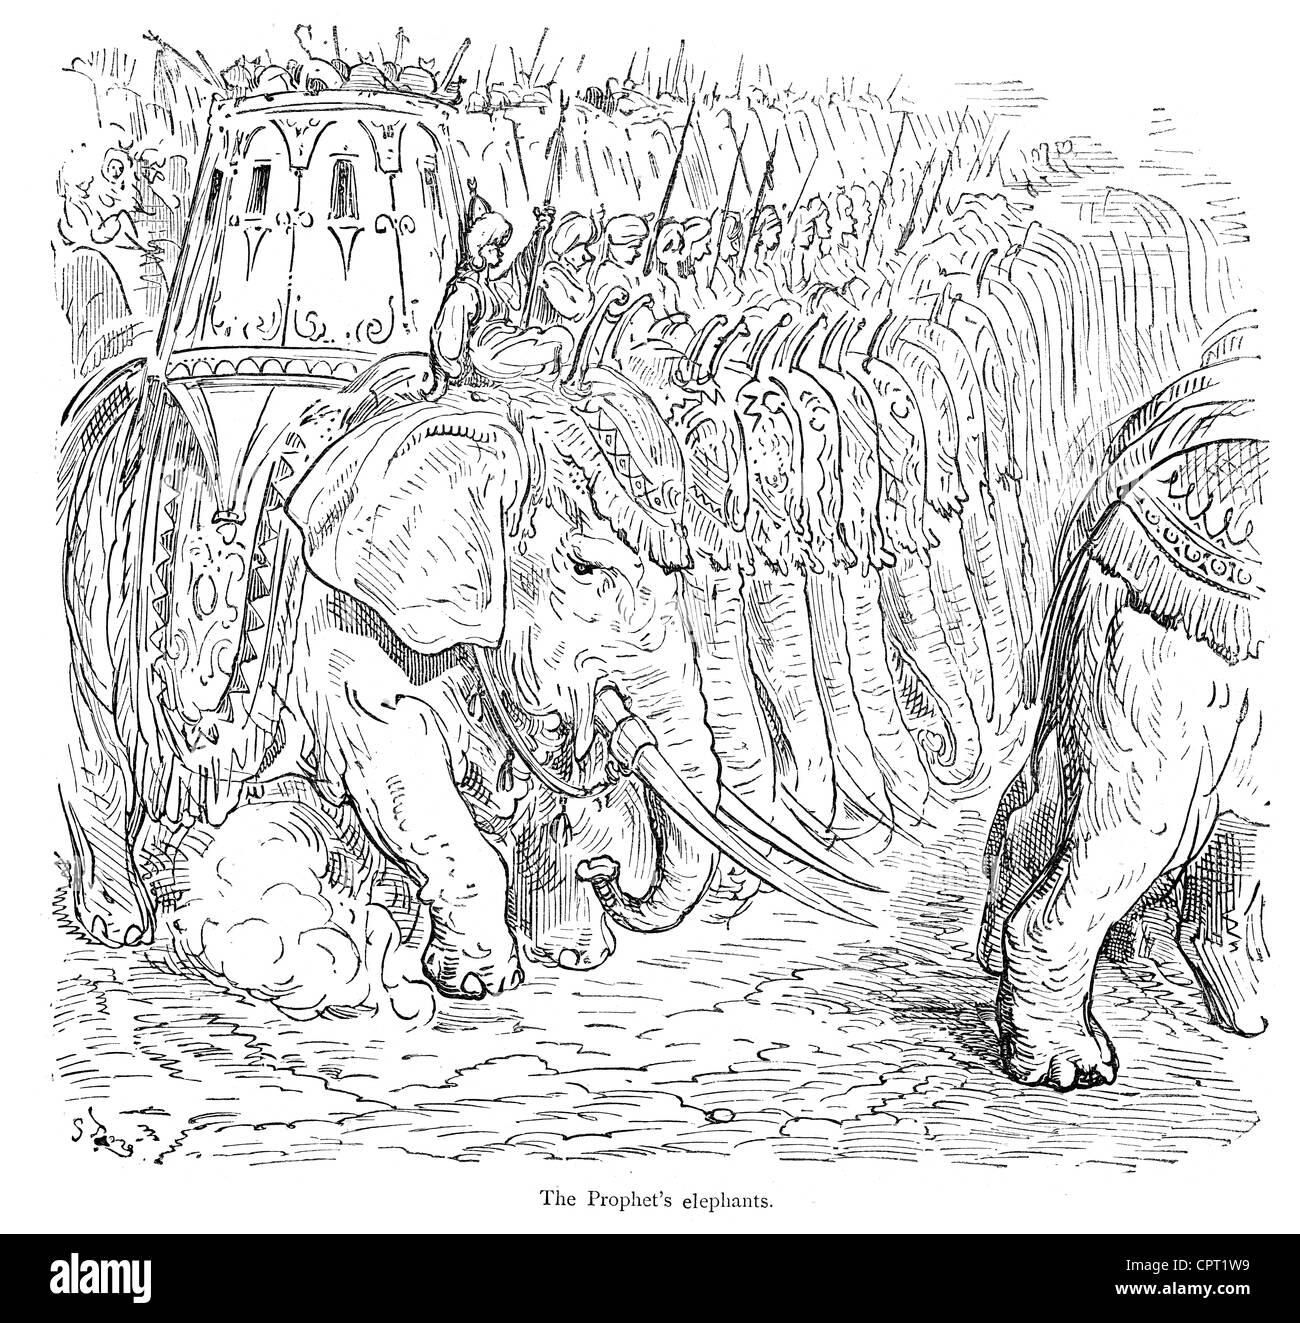 Les éléphants du Prophète. Illustration de la légende de Croquemitaine par Gustave Doré Banque D'Images